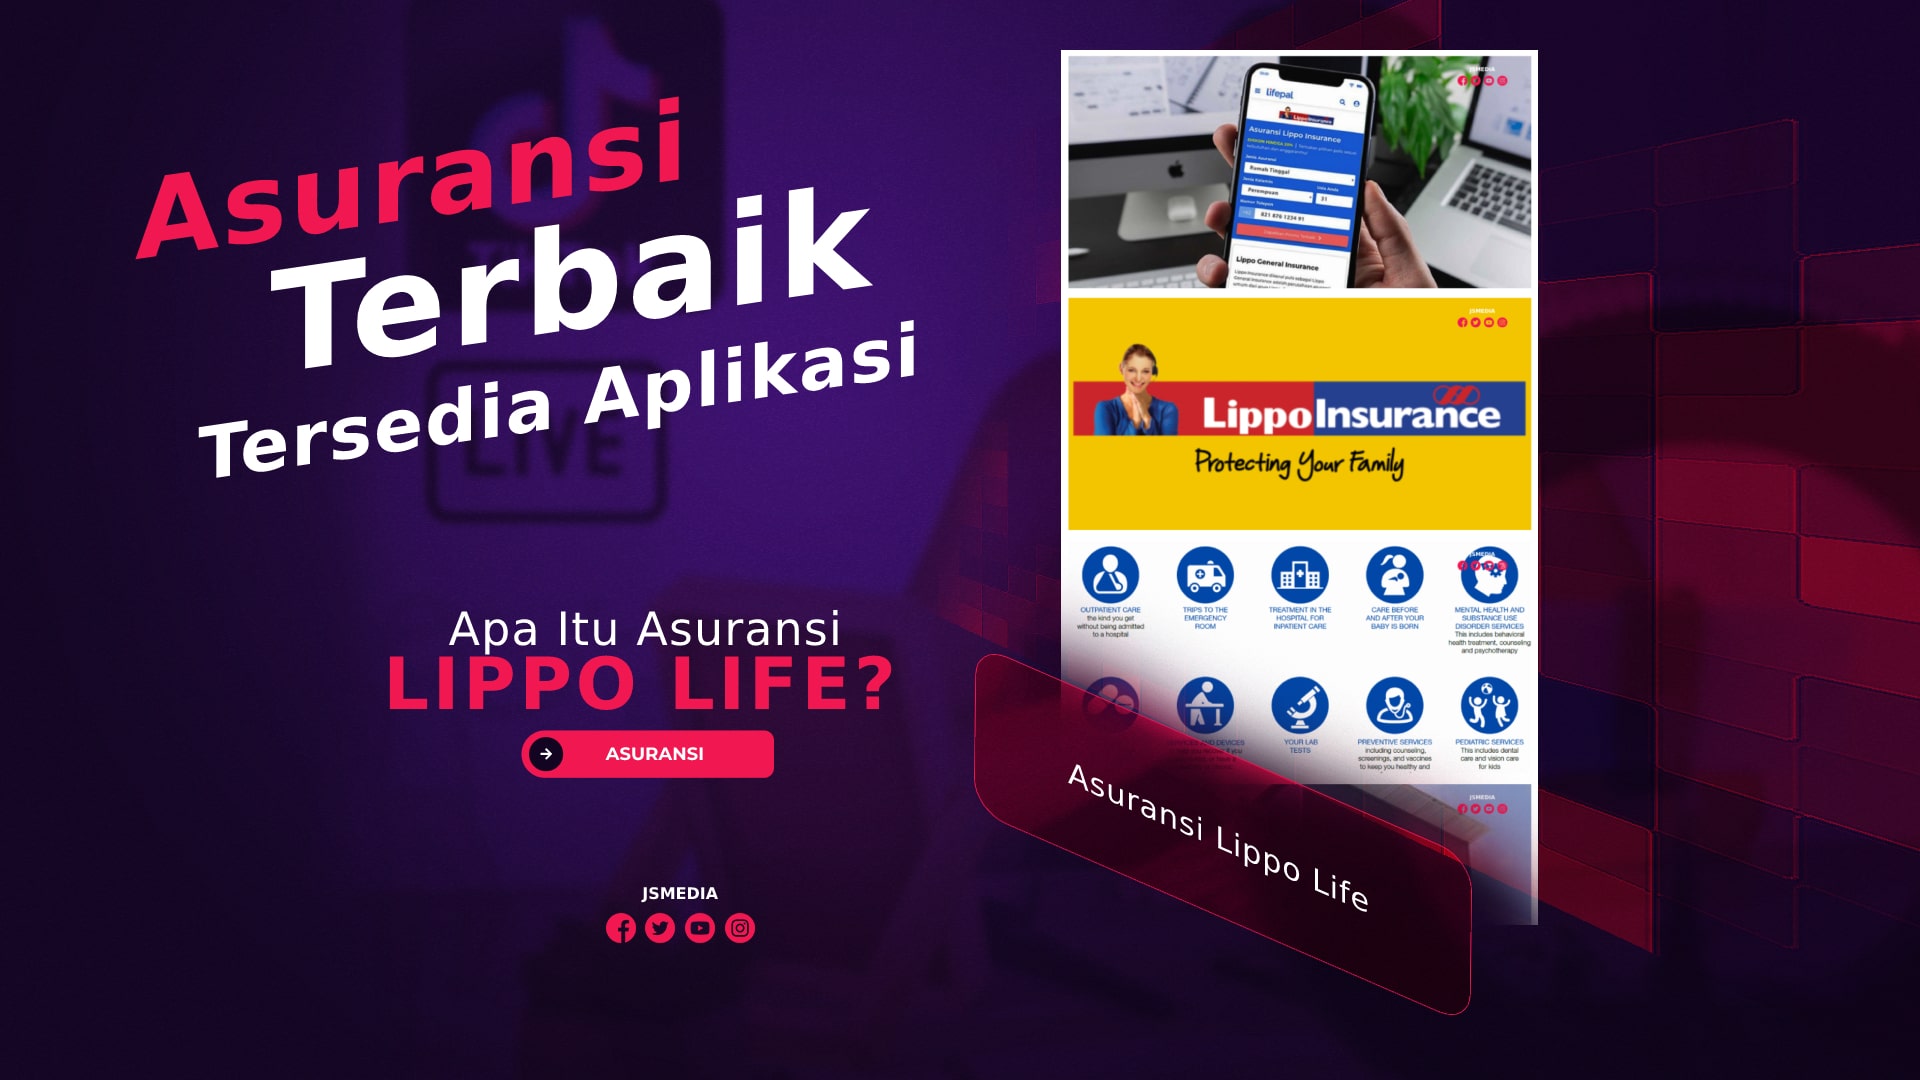 Apa Itu Asuransi Lippo Life? Asuransi Terbaik Tersedia Aplikasi